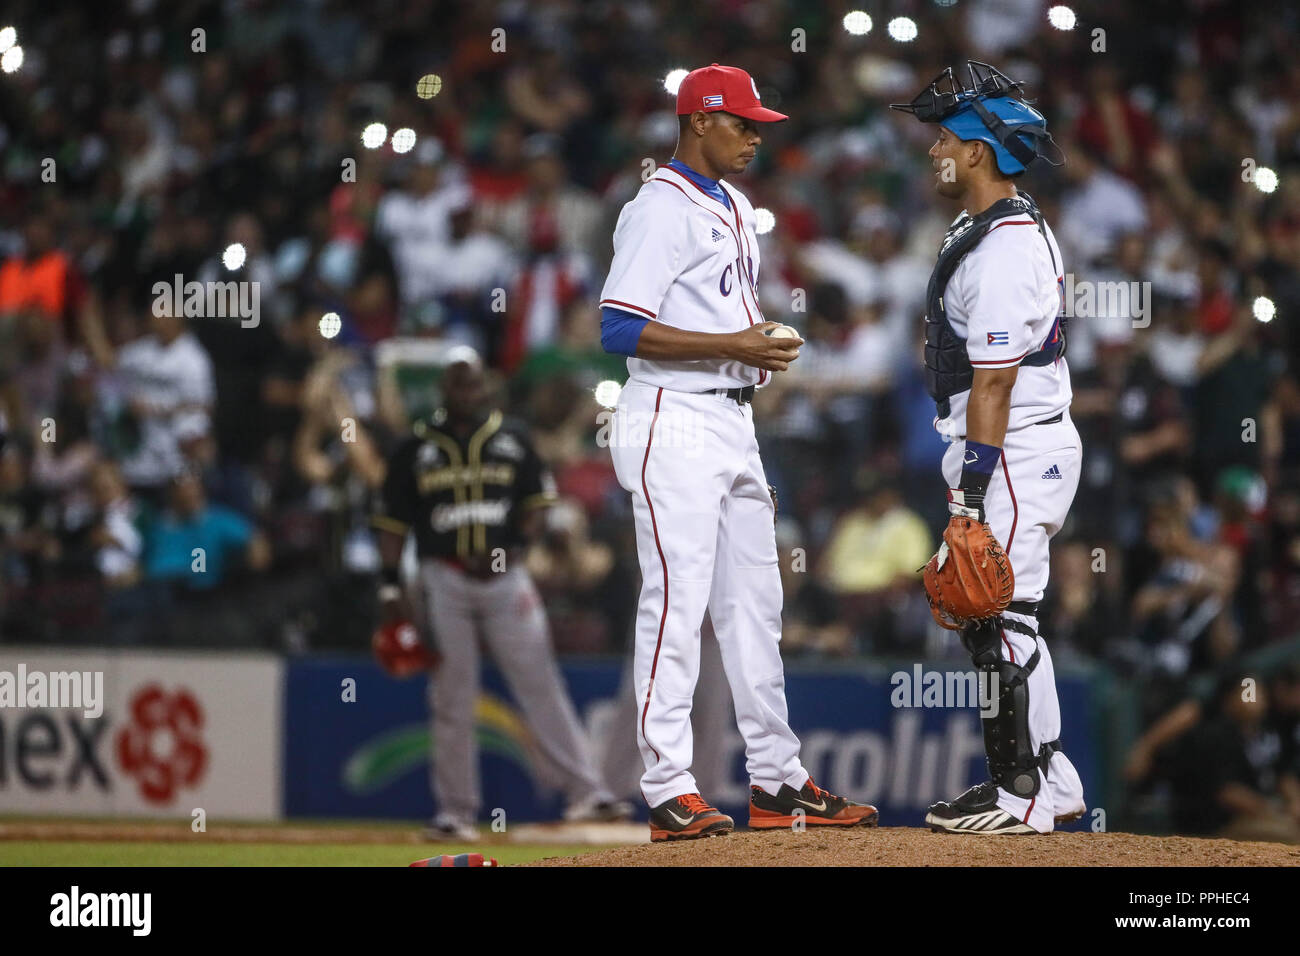 El pitcher relevo Jose Angel Garcia saca el ultimo out con el cual Cuba gana cuatro carreras por cero a Mexico, durante partido de beisbol de la Seri Stock Photo